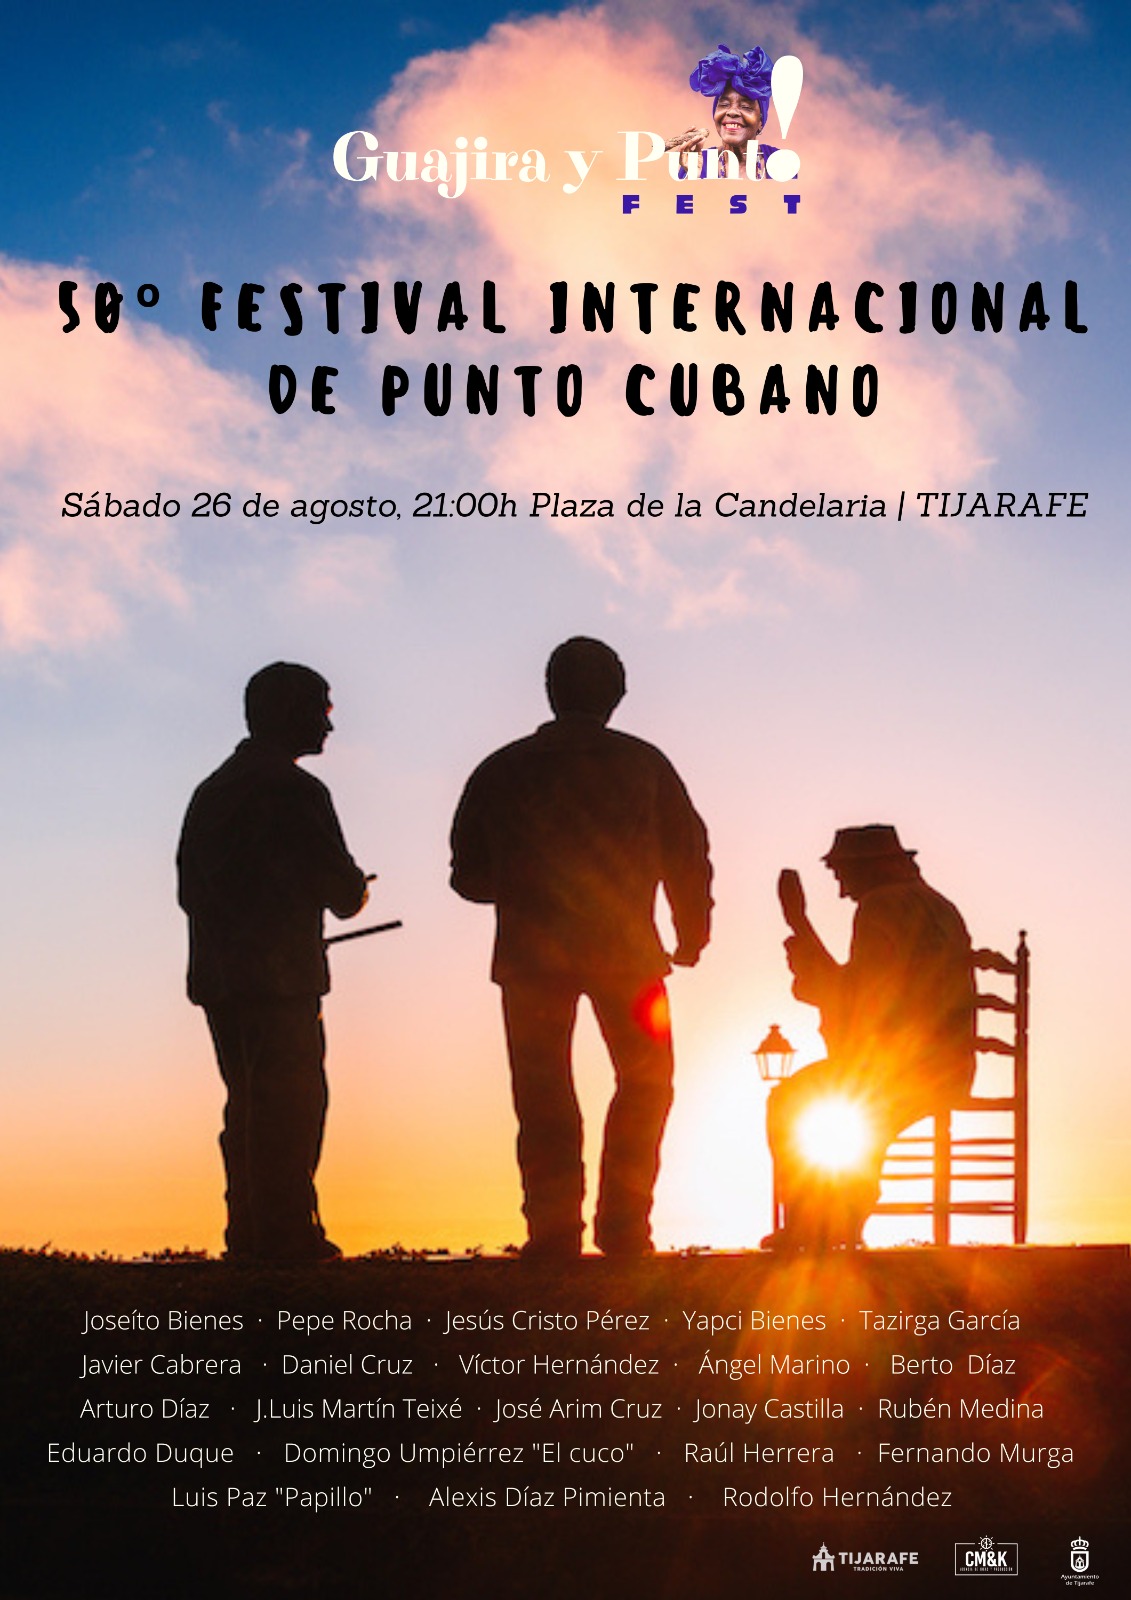 Guajira y Punto! Fest: 50º Festival Internacional de Punto Cubano